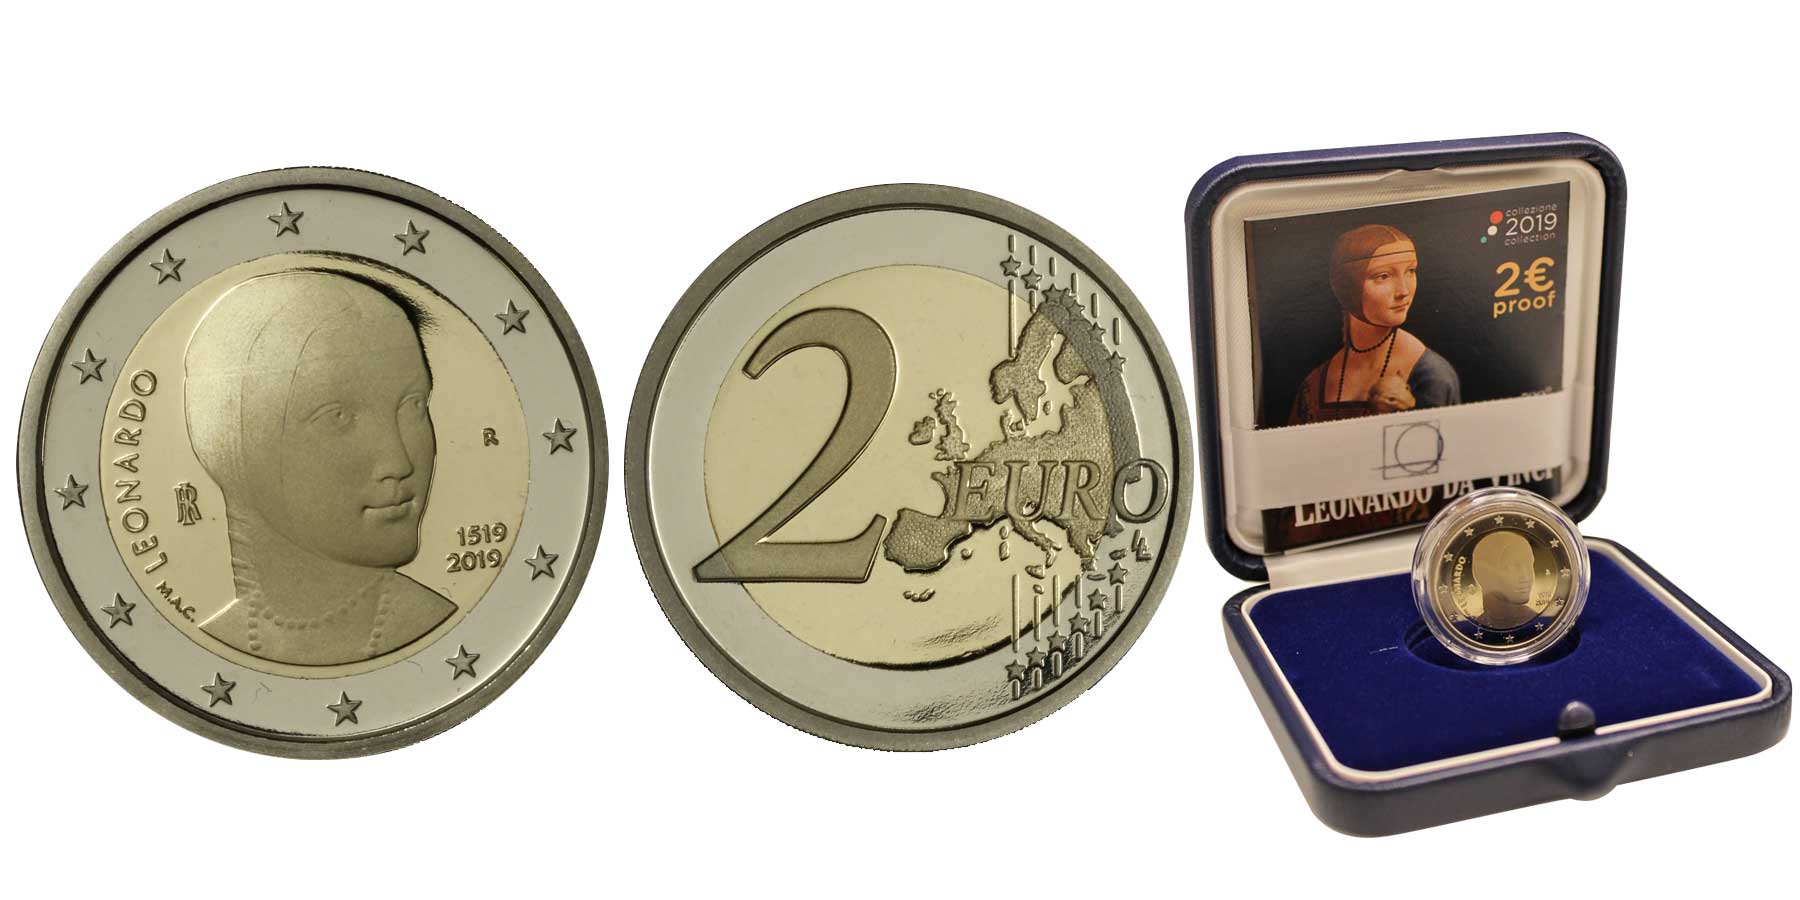 "Leonardo da Vinci" - moneta da 2 euro in confezione ufficiale